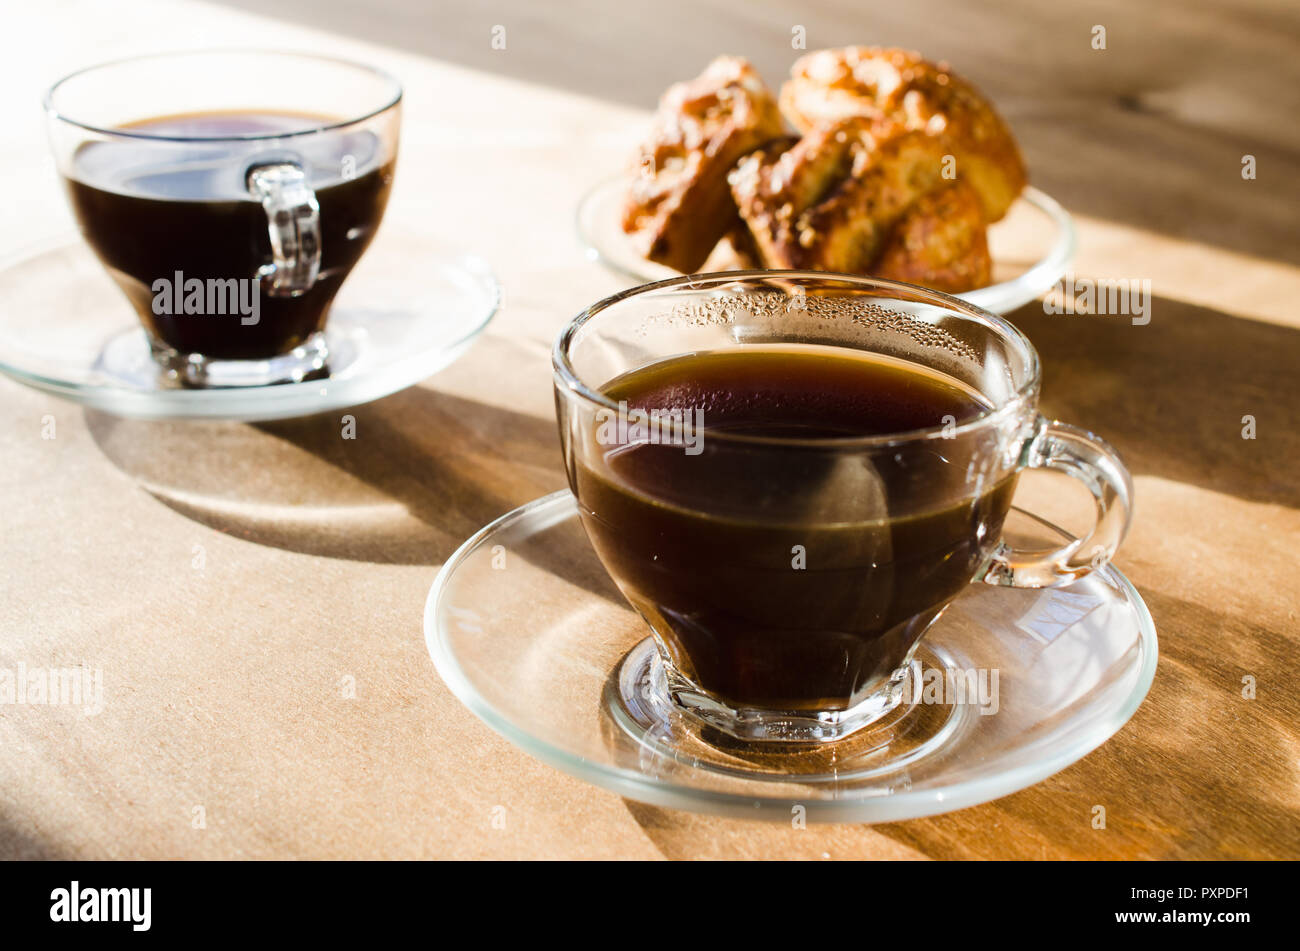 Zwei Tassen Kaffee Und Torten Auf Holztisch Kaffeepause Guten Morgen Konzept Stockfotografie Alamy